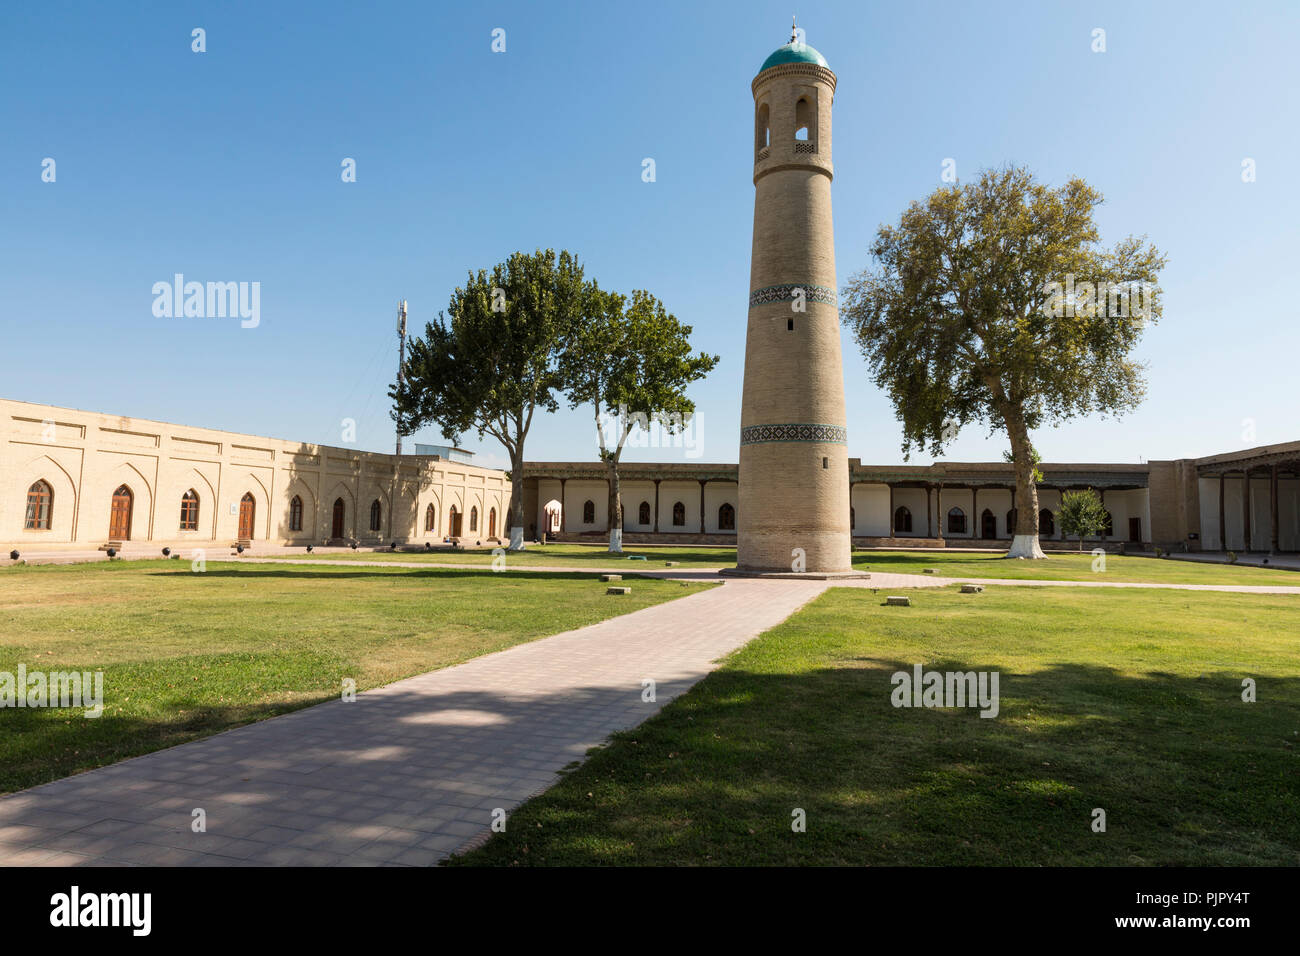 L'ensemble architectural de la mosquée Jami (vendredi) comprend le minaret au milieu du jardin de Kokand. Banque D'Images